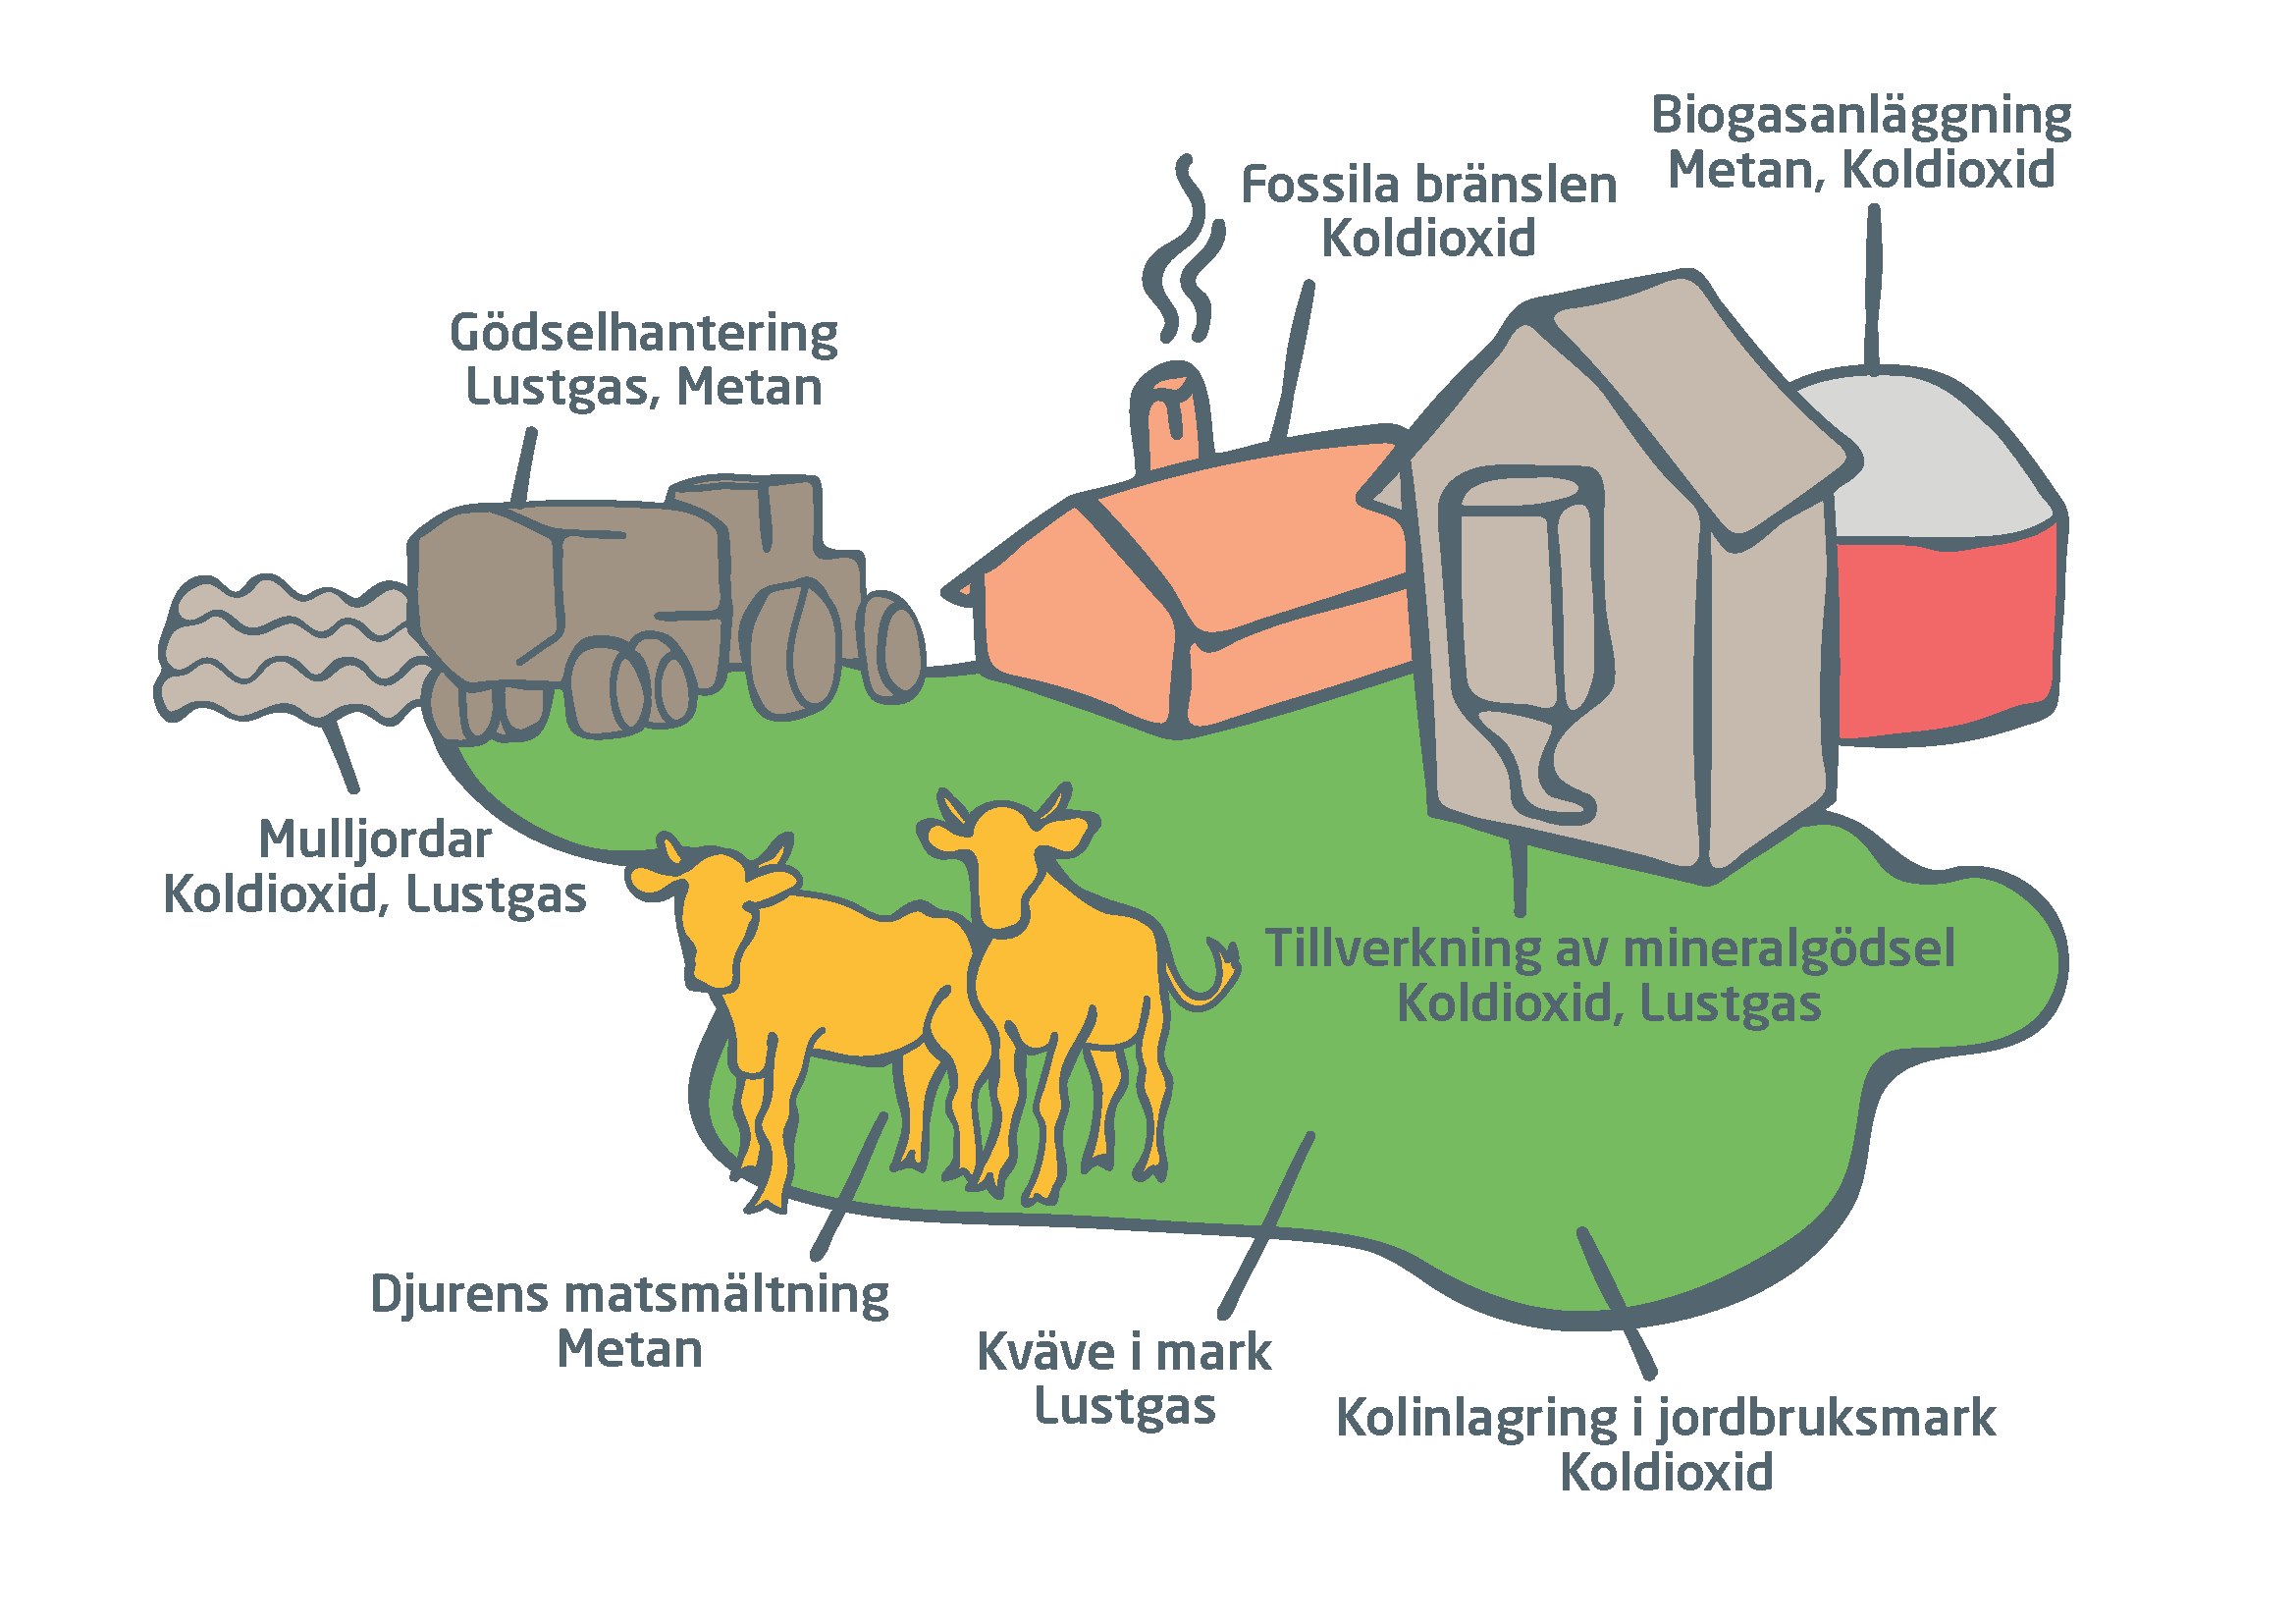 En tecknad översiktlig bild av en bondgård, med djur, fordon, mark, gödsel och byggnader. Streck från de olika delarna av gården visar vilken typ av gas som kommer från, eller binds av, dem.